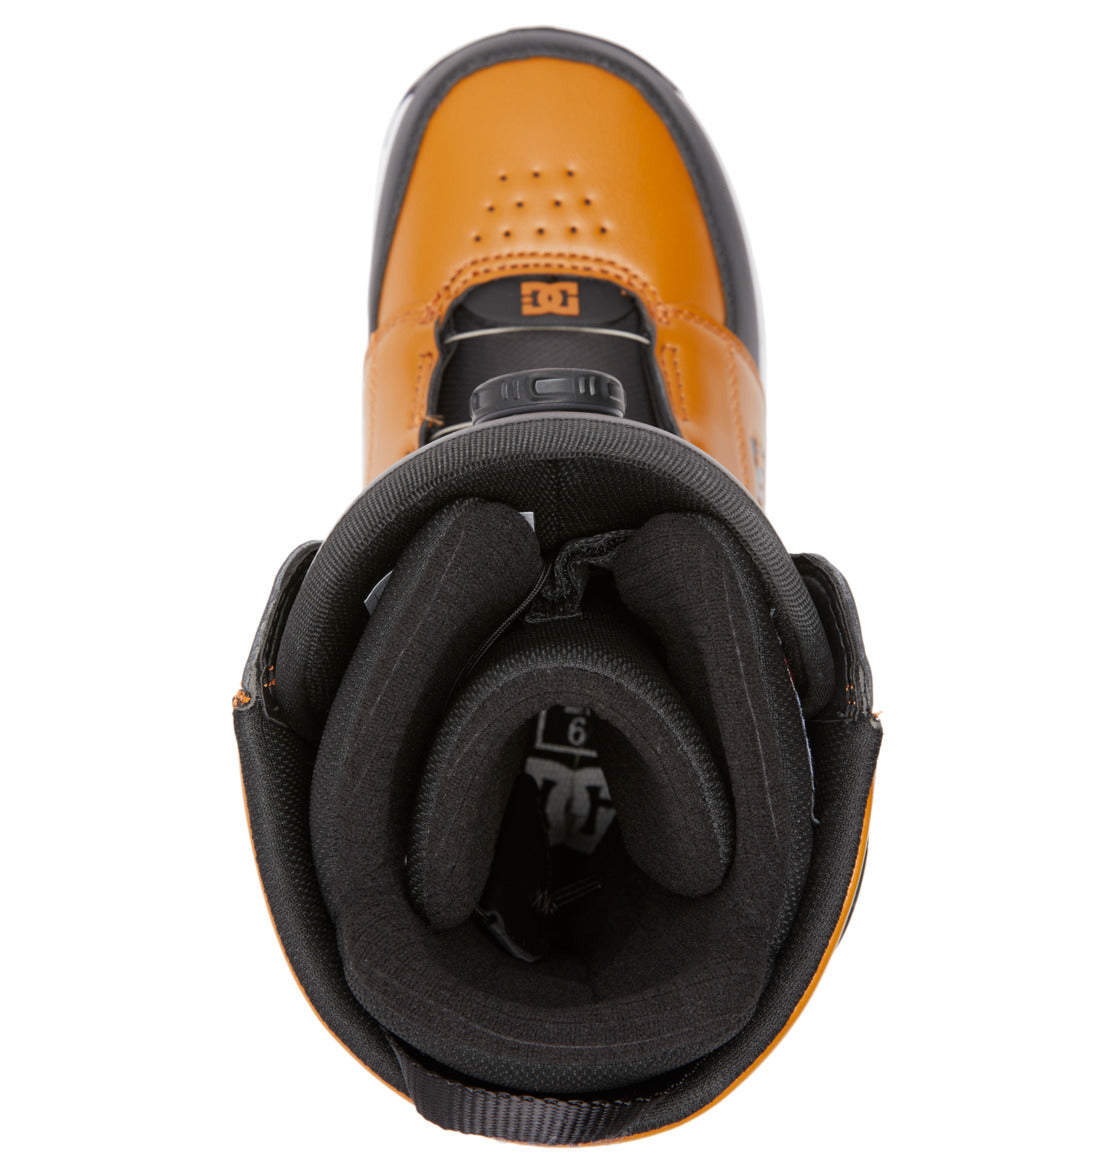 Men&#39;s Control BOA® Snowboard Boots - Wheat/Black